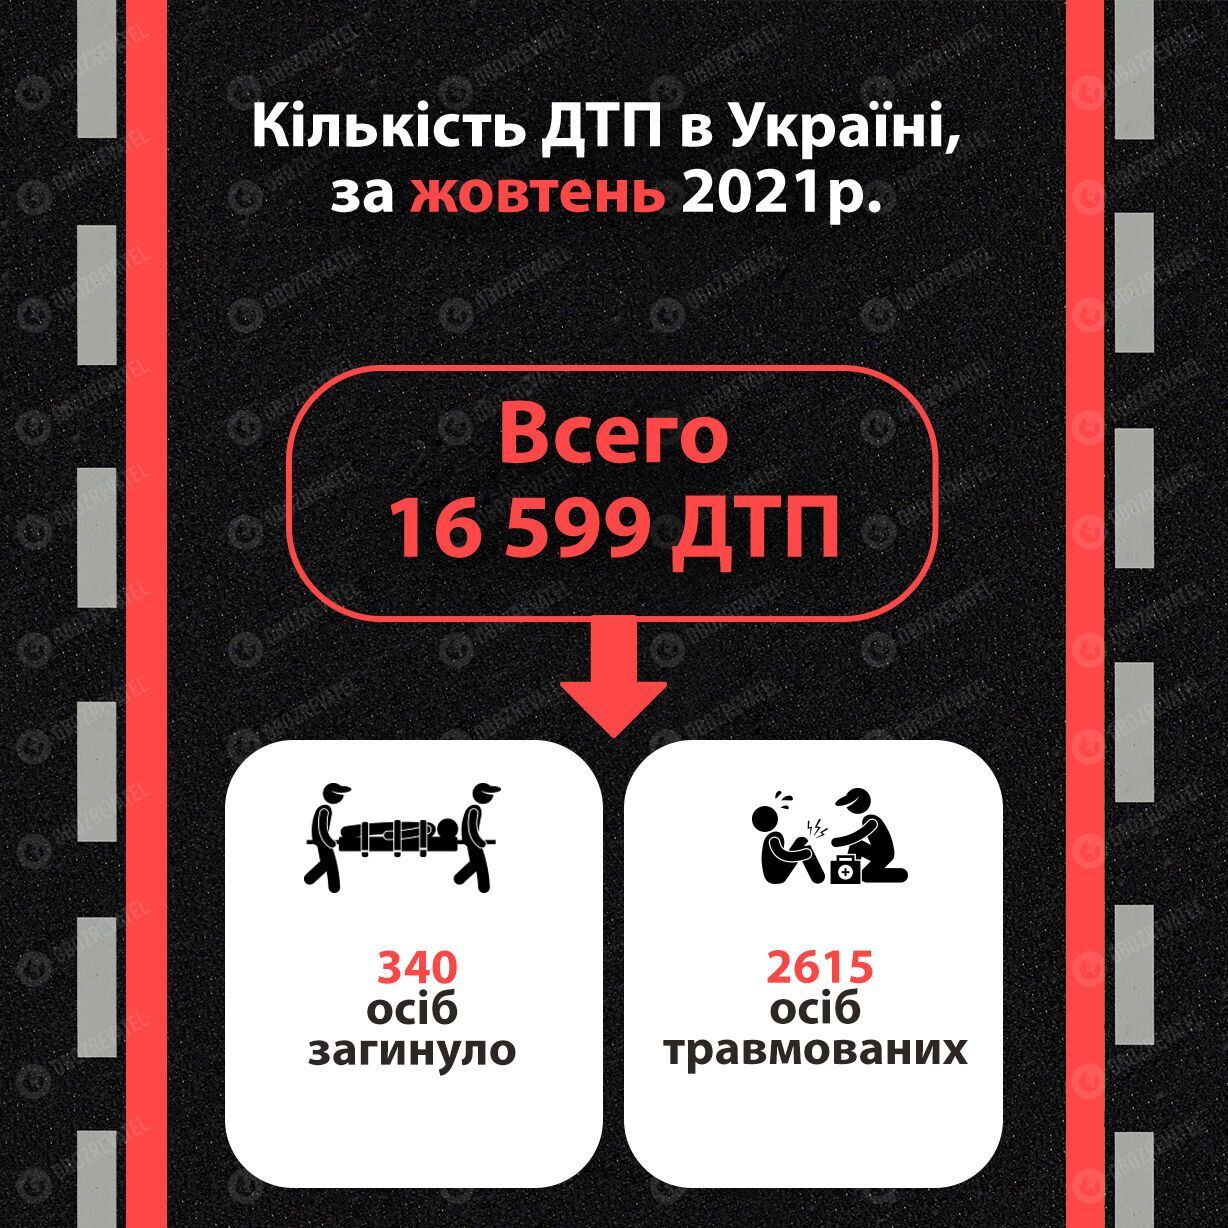 Статистика ДТП в Україні за жовтень